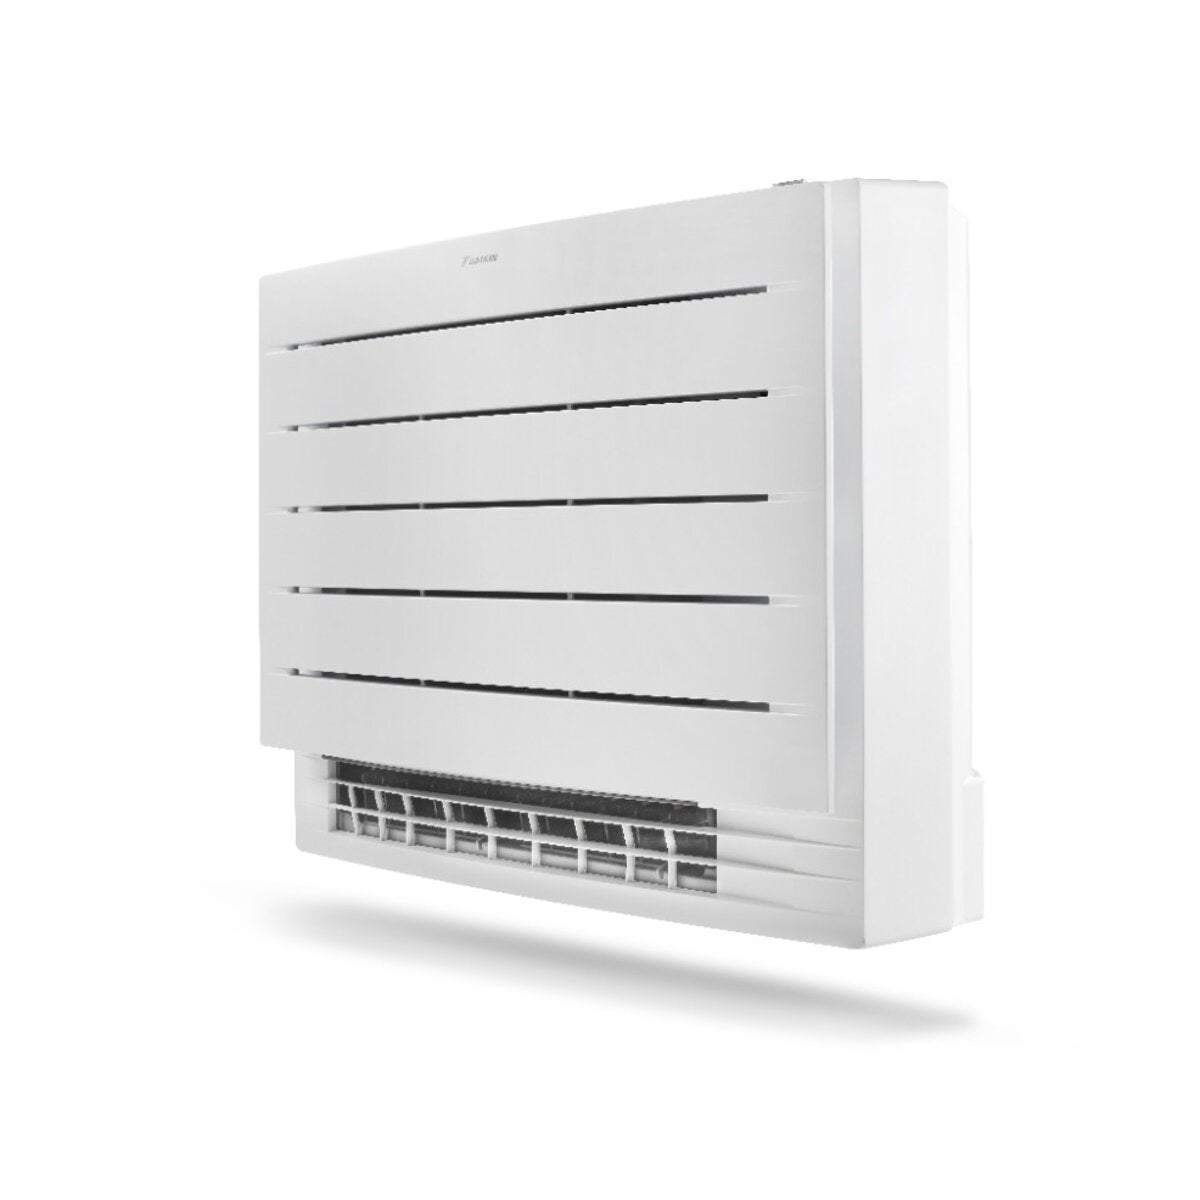 Daikin floor air conditioner Perfera Floor 12000 BTU inverter A ++ with wifi